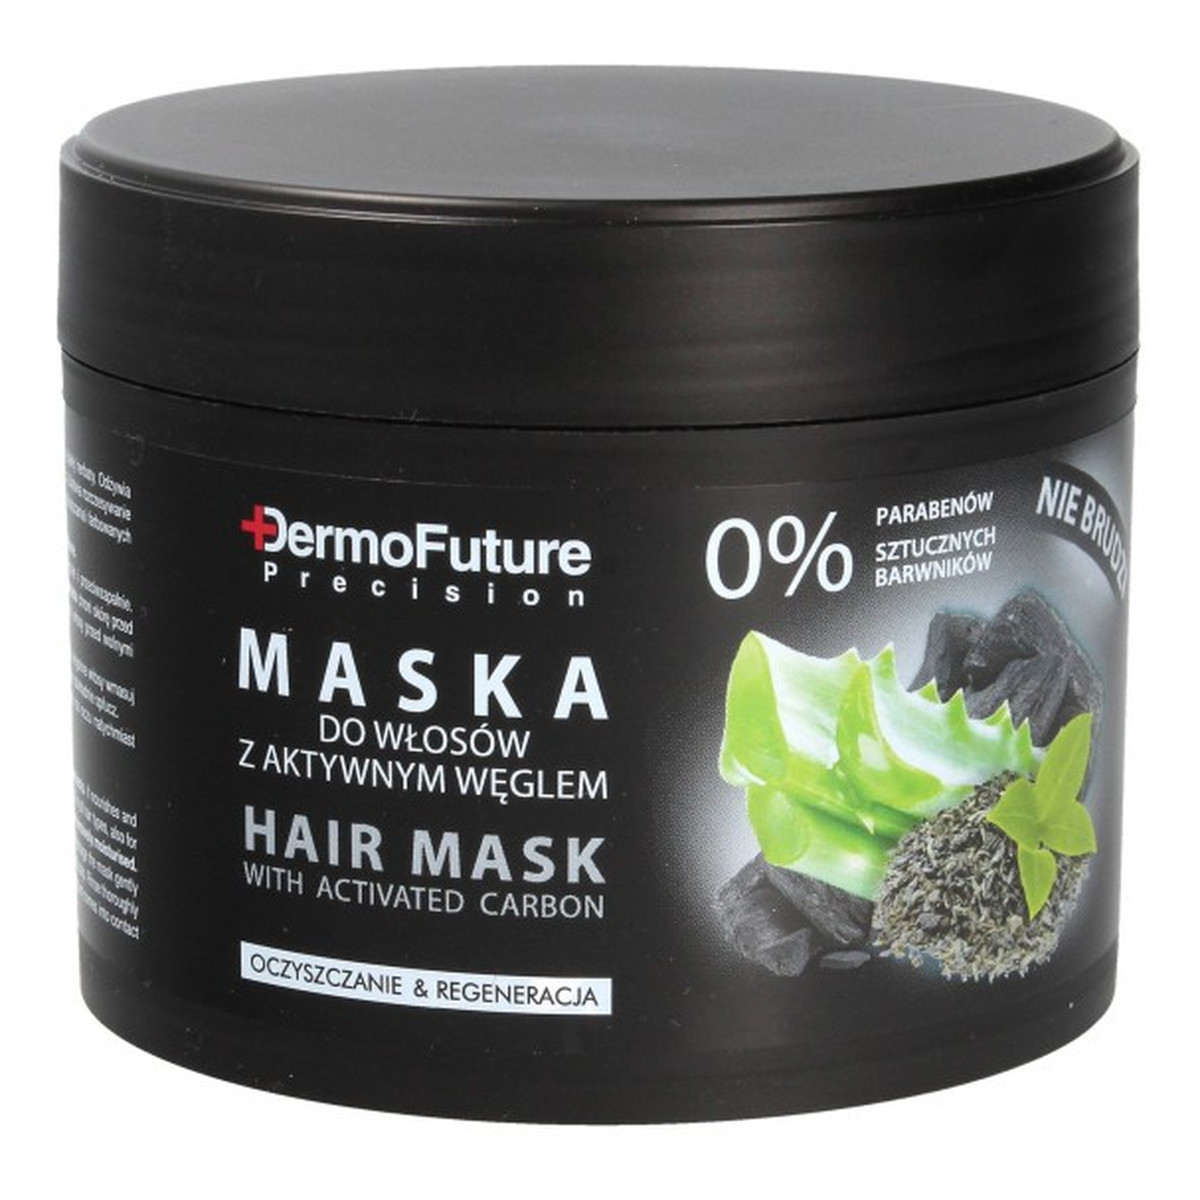 DermoFuture Precision Aktywny Węgiel maska do wszystkich rodzajów włosów 300ml